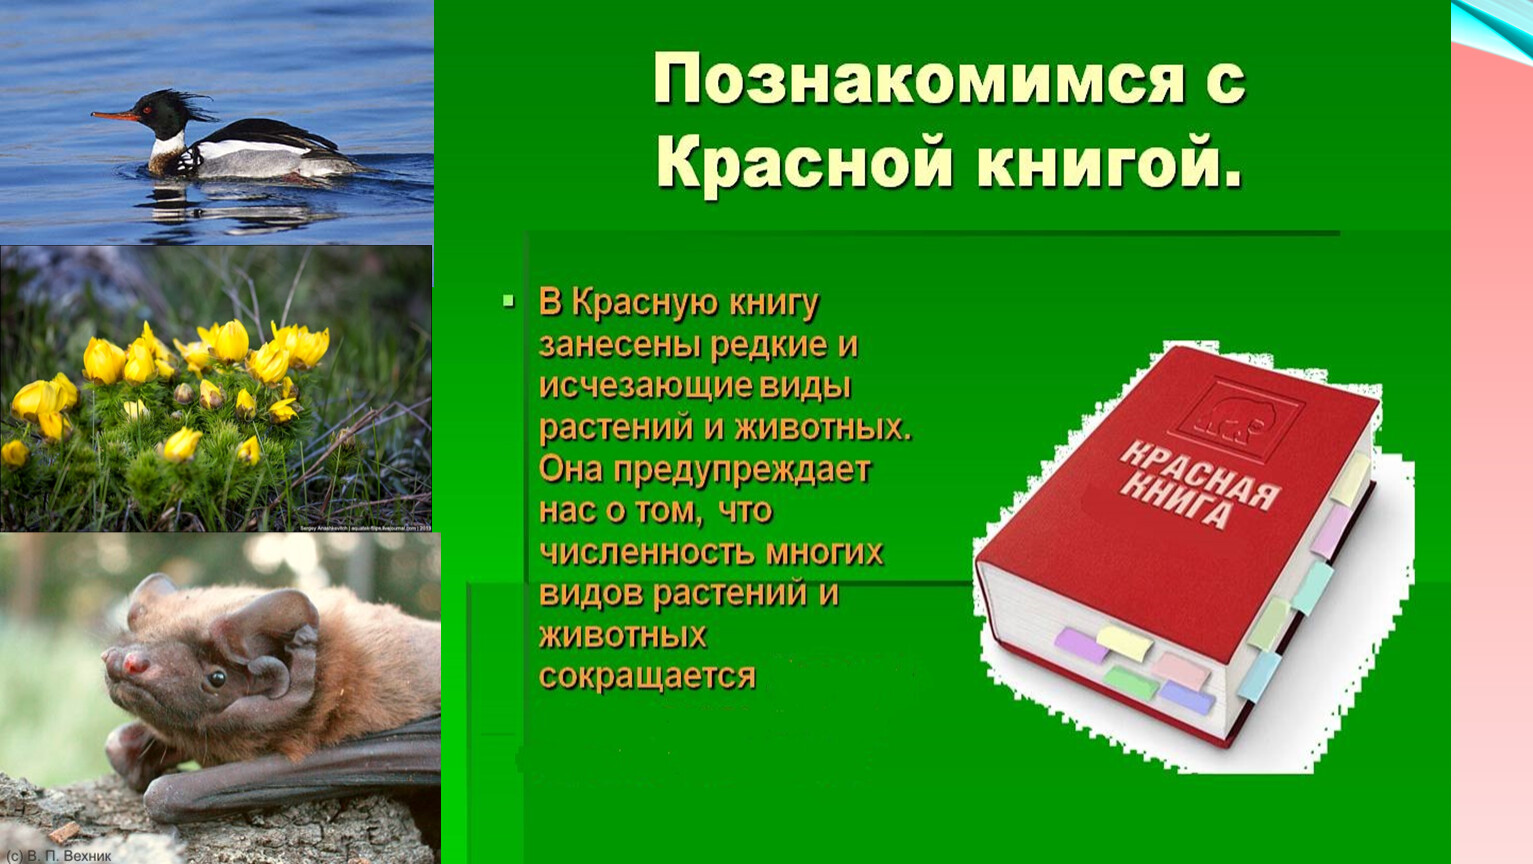 Животные и растения красной книги Крыма